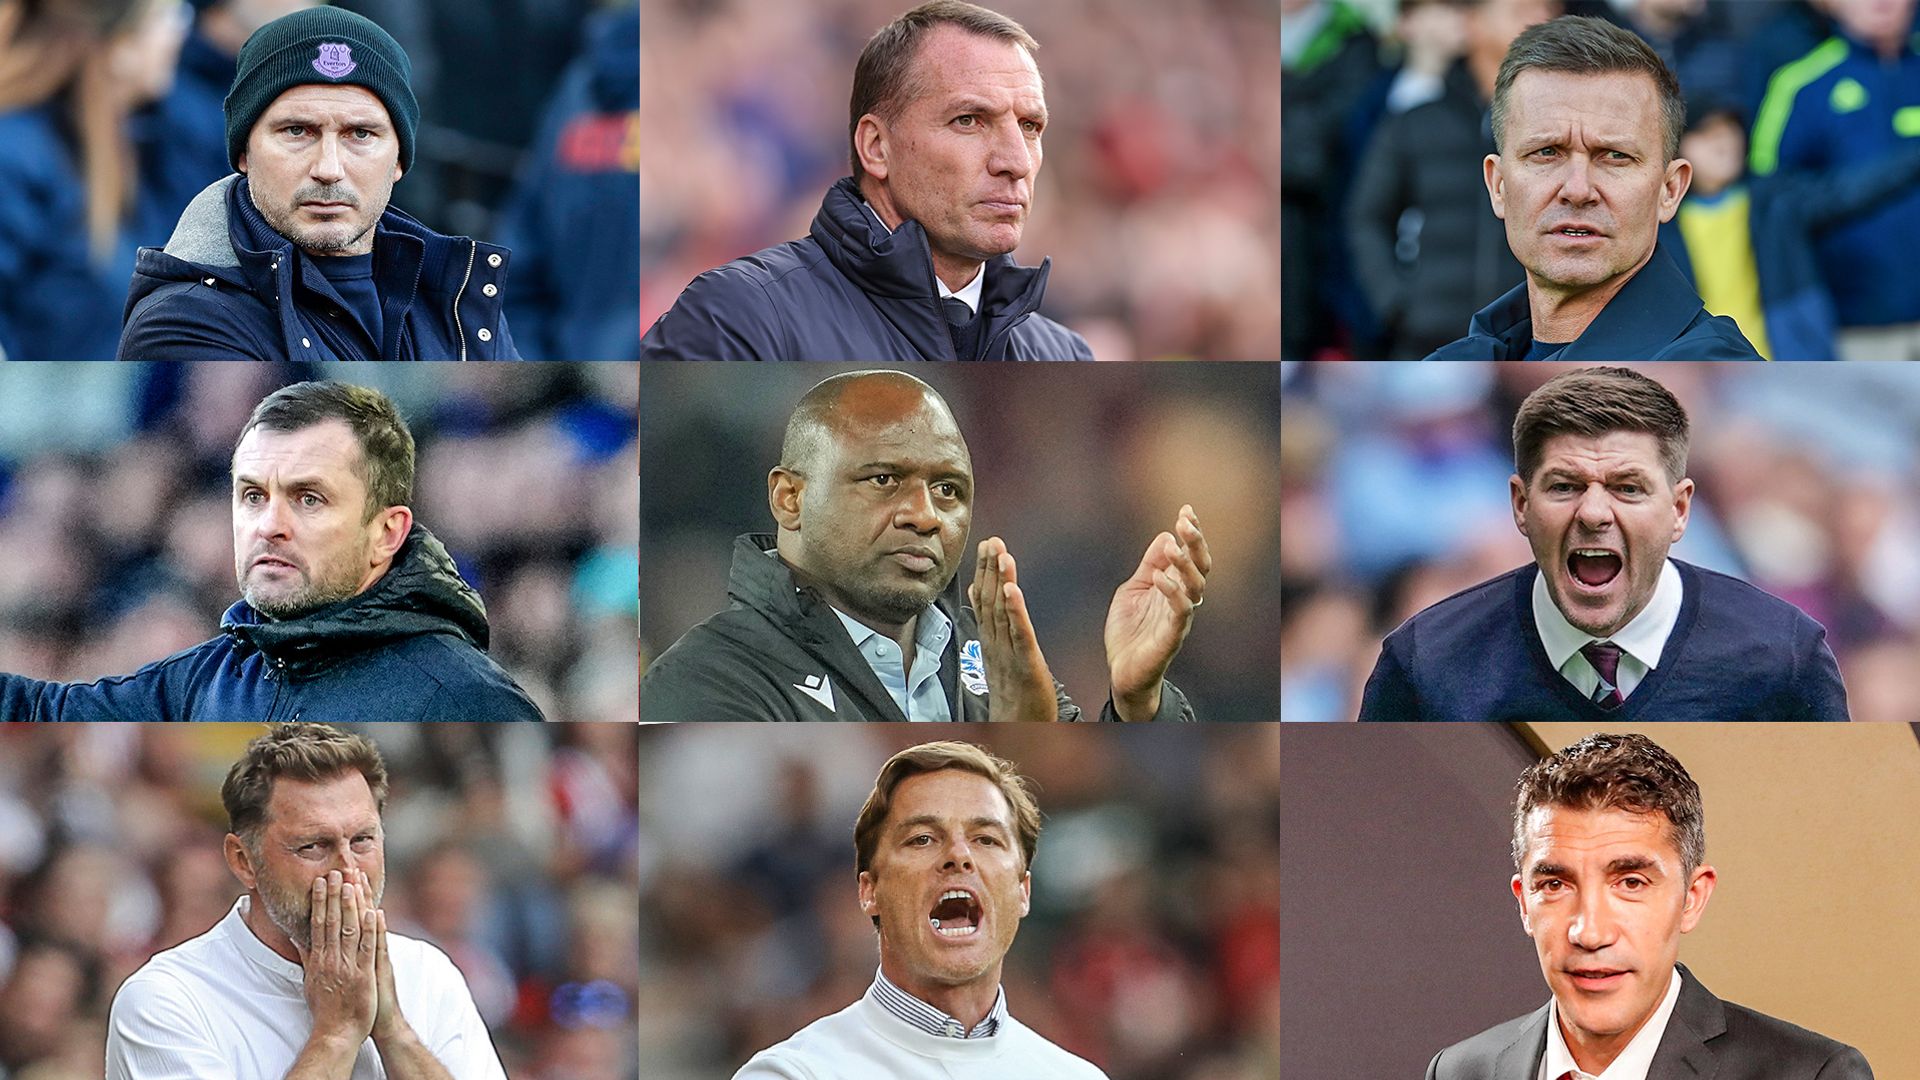 Does sacking a manager improve Premier League survival chances?